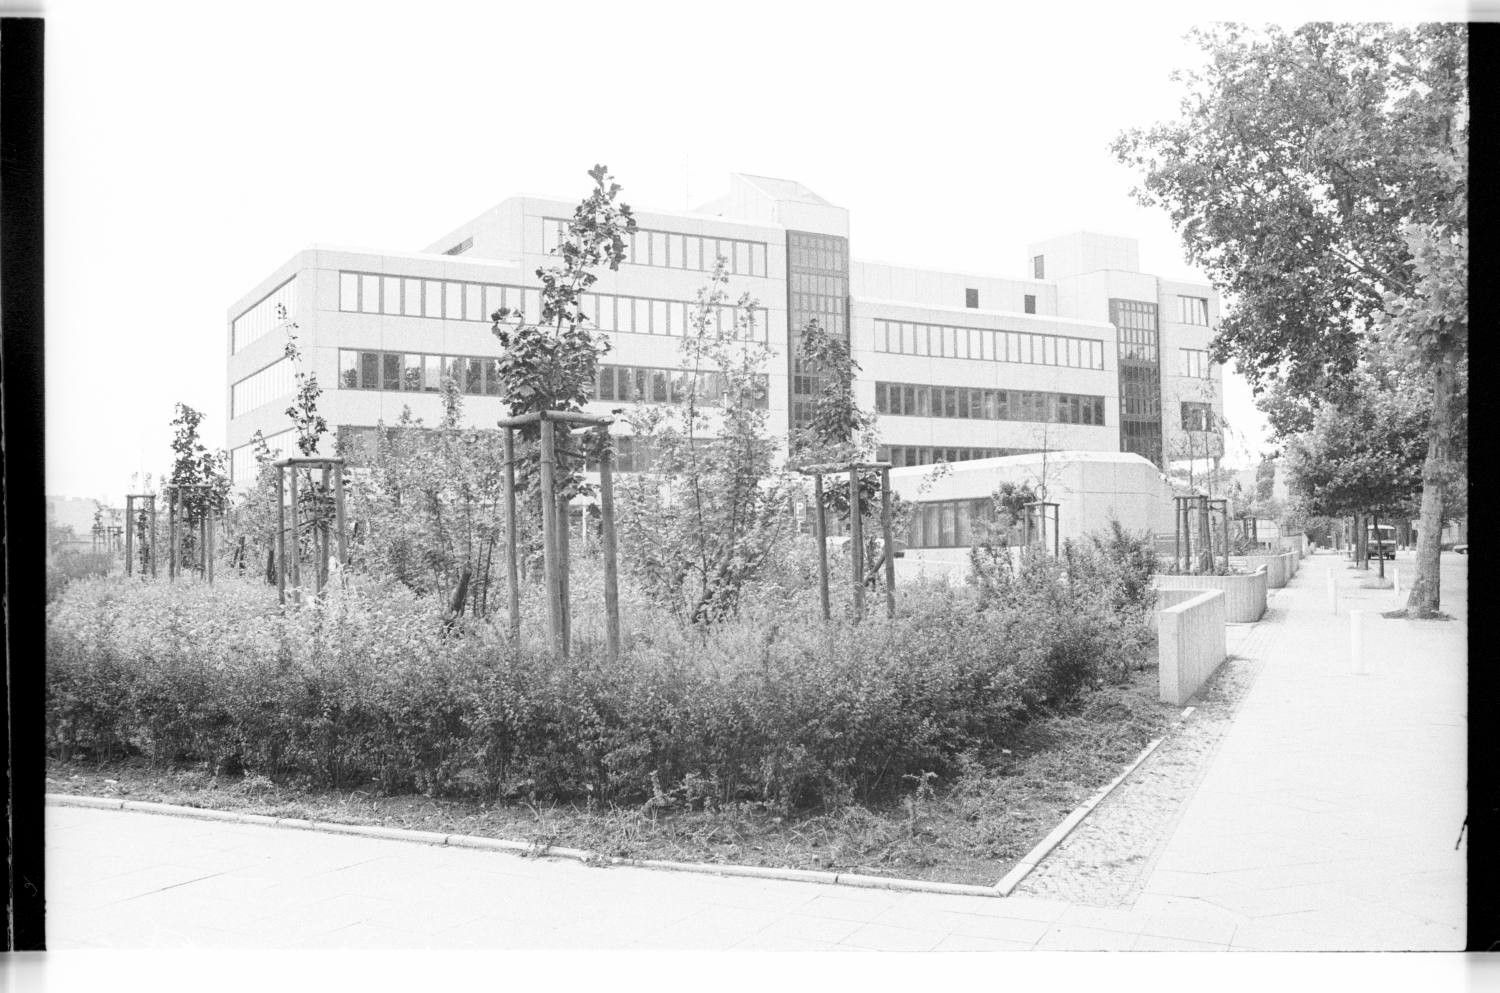 Kleinbildnegative: Gesundheitsamt, Erfurter Straße und Heylstraße Ecke Erfurter Straße, 1981 (Museen Tempelhof-Schöneberg/Jürgen Henschel RR-F)